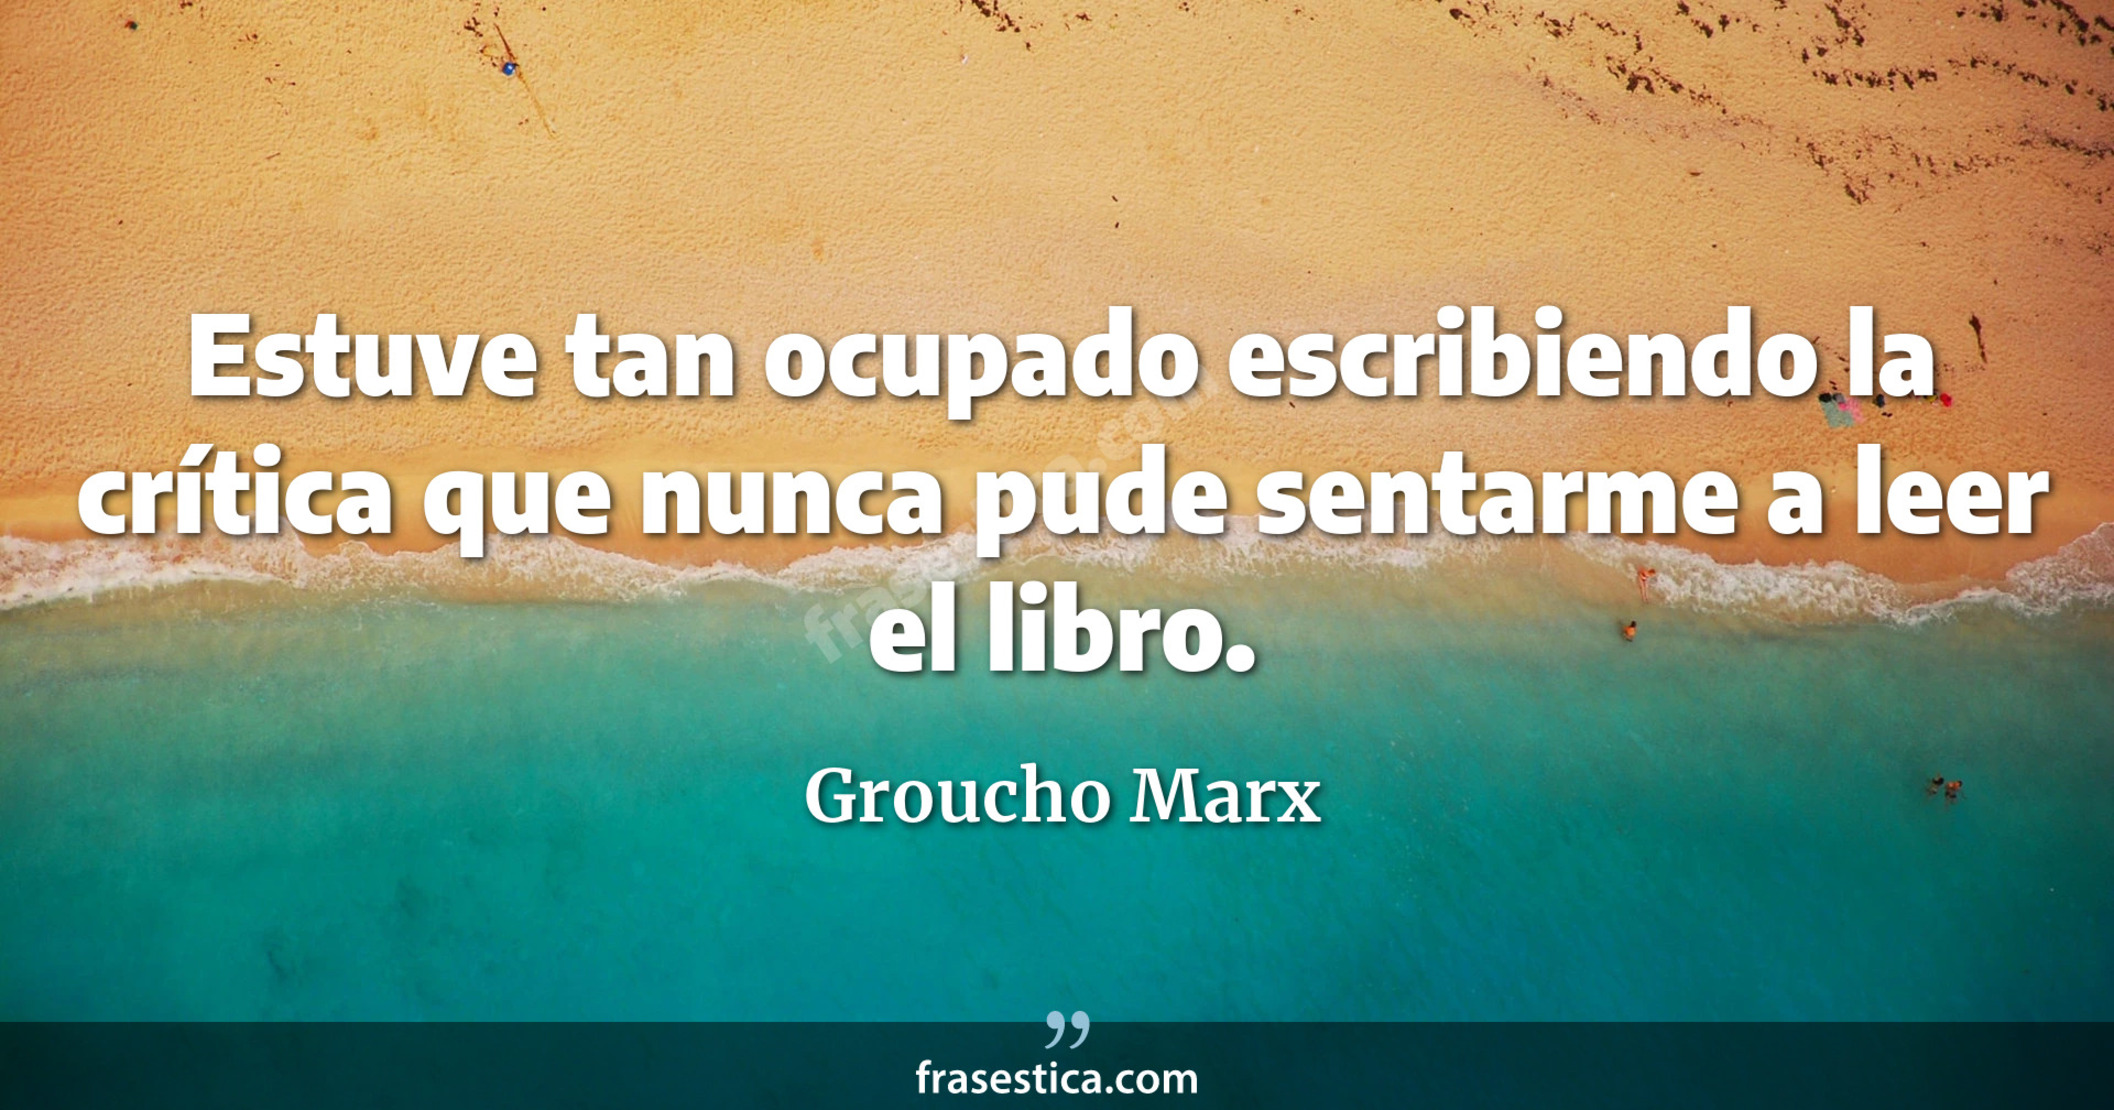 Estuve tan ocupado escribiendo la crítica que nunca pude sentarme a leer el libro. - Groucho Marx